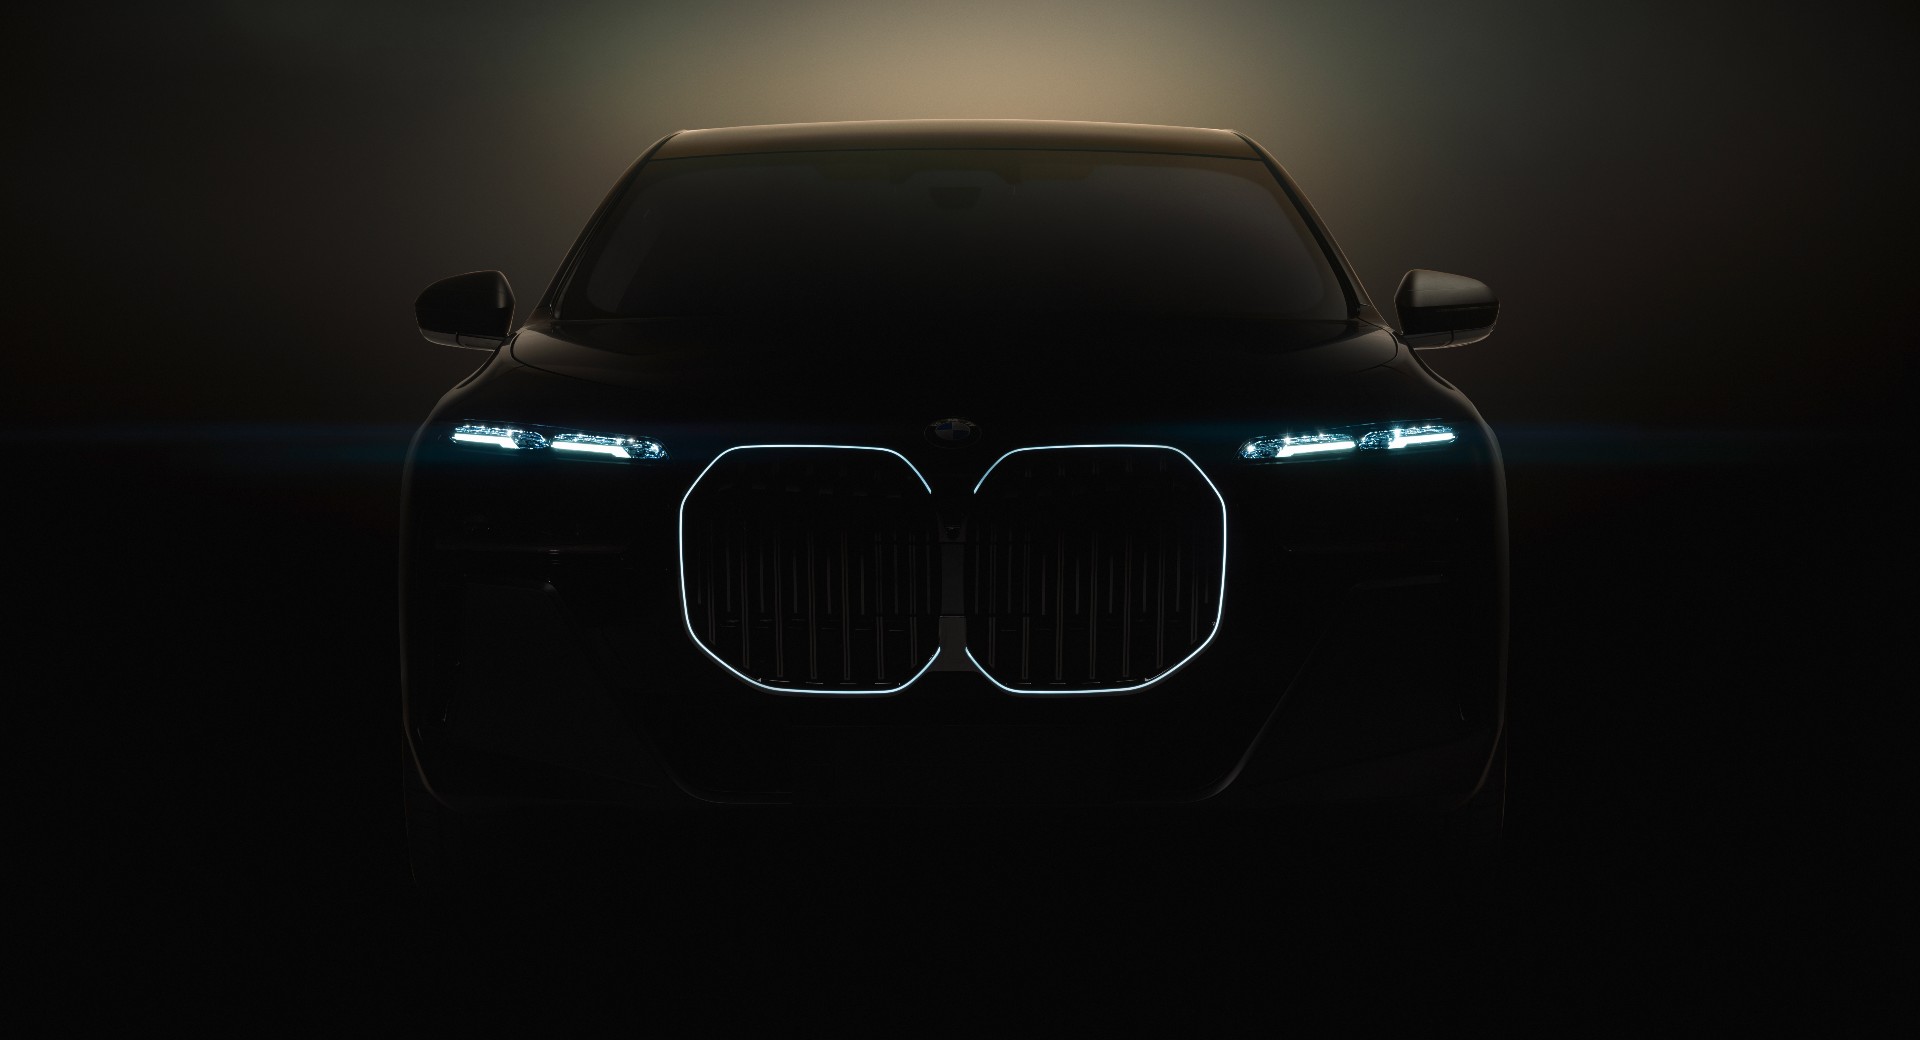 Itt vannak az első információk a BMW i7-ről